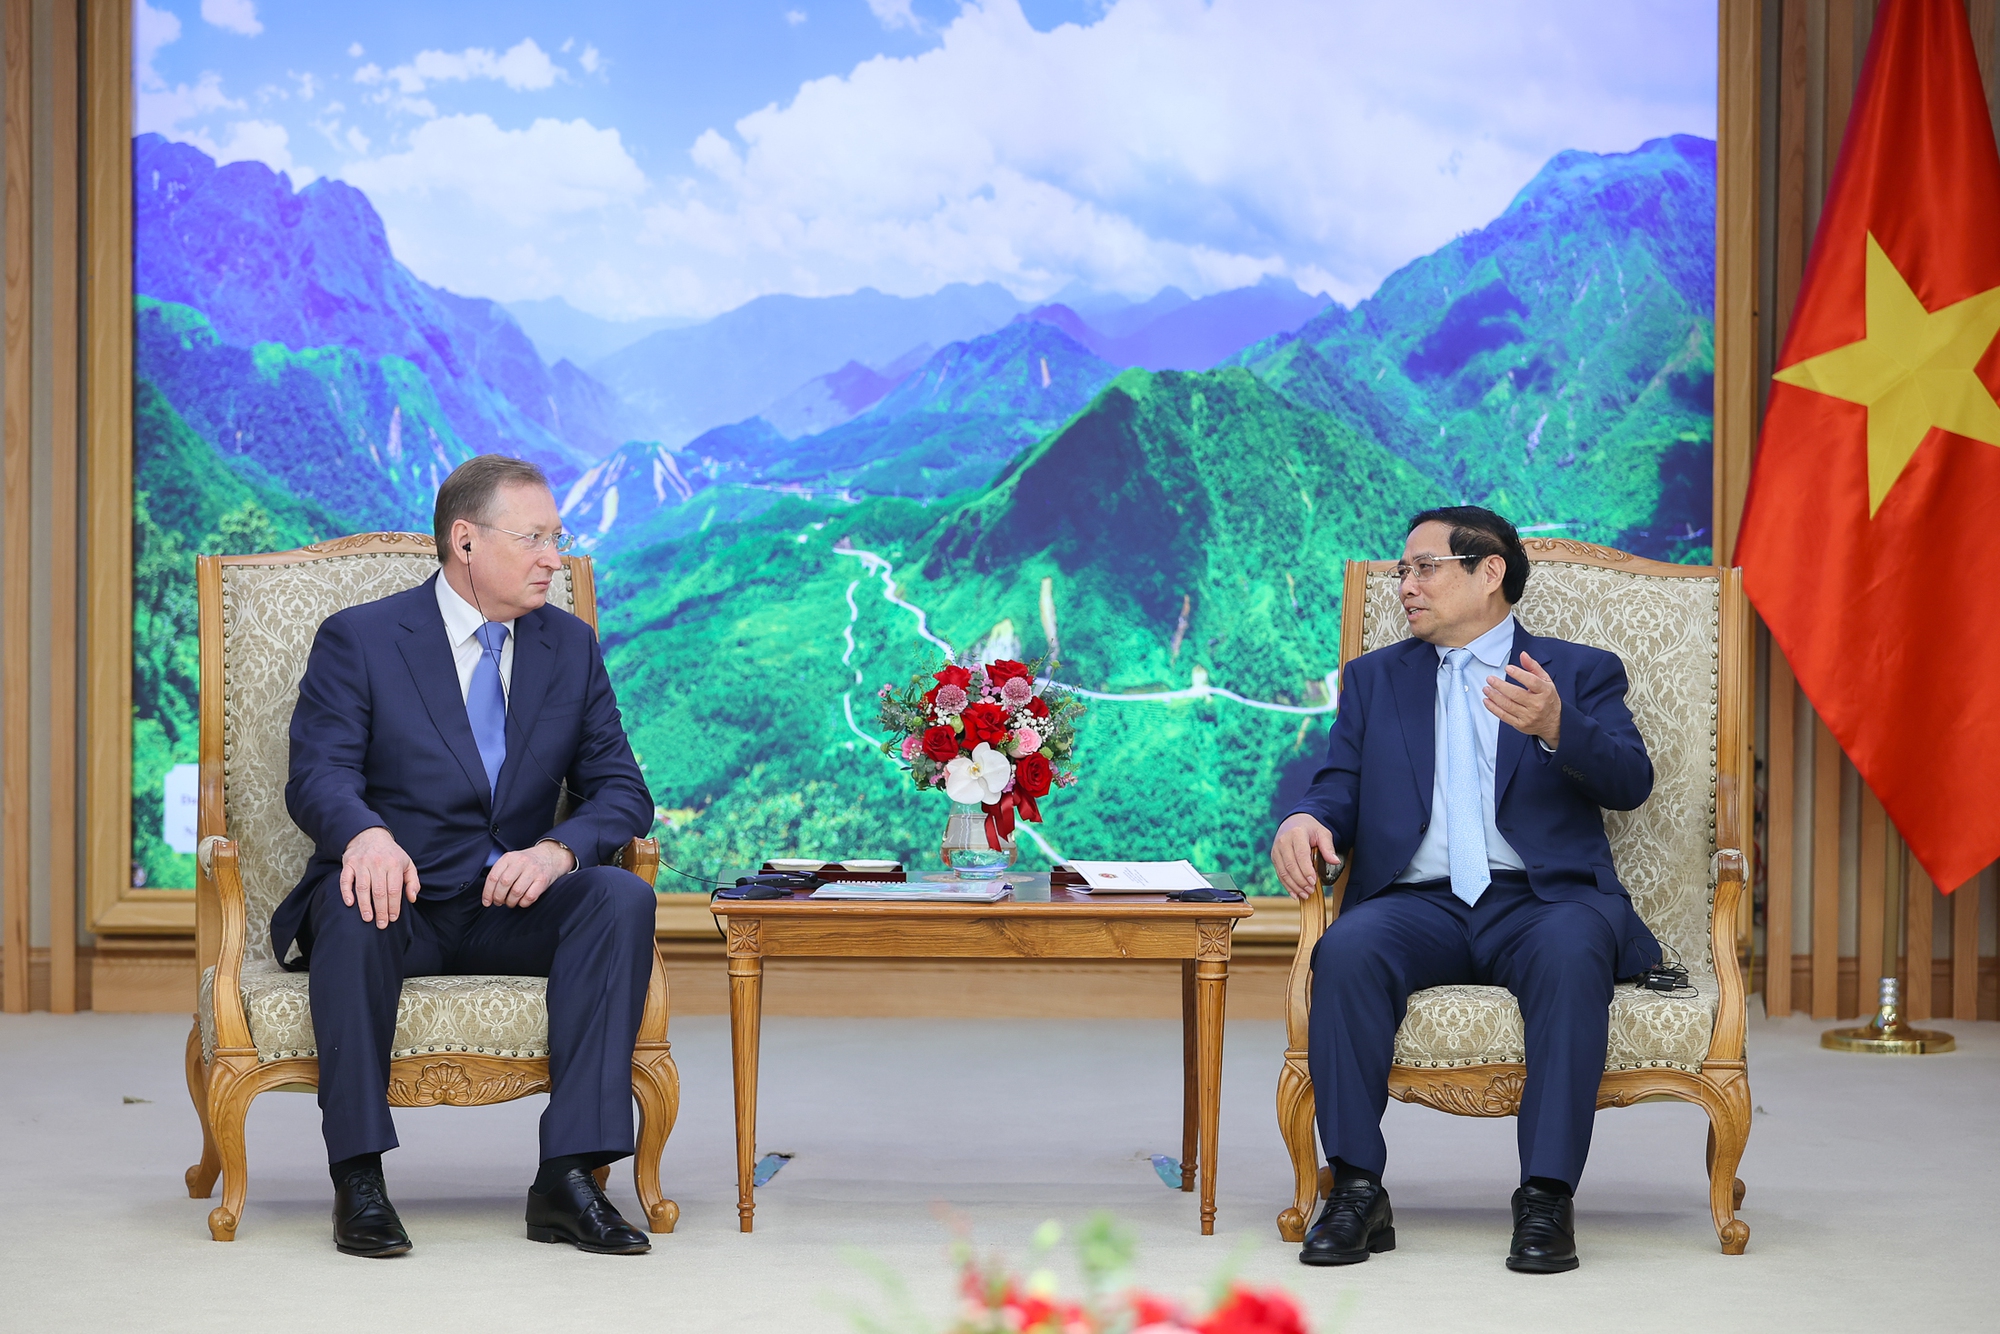 Thủ tướng Phạm Minh Chính: Chính phủ Việt Nam luôn tạo điều kiện thuận lợi để hai bên có thể triển khai hợp tác cùng có lợi trong lĩnh vực dầu khí và năng lượng - Ảnh: VGP/Nhật Bắc